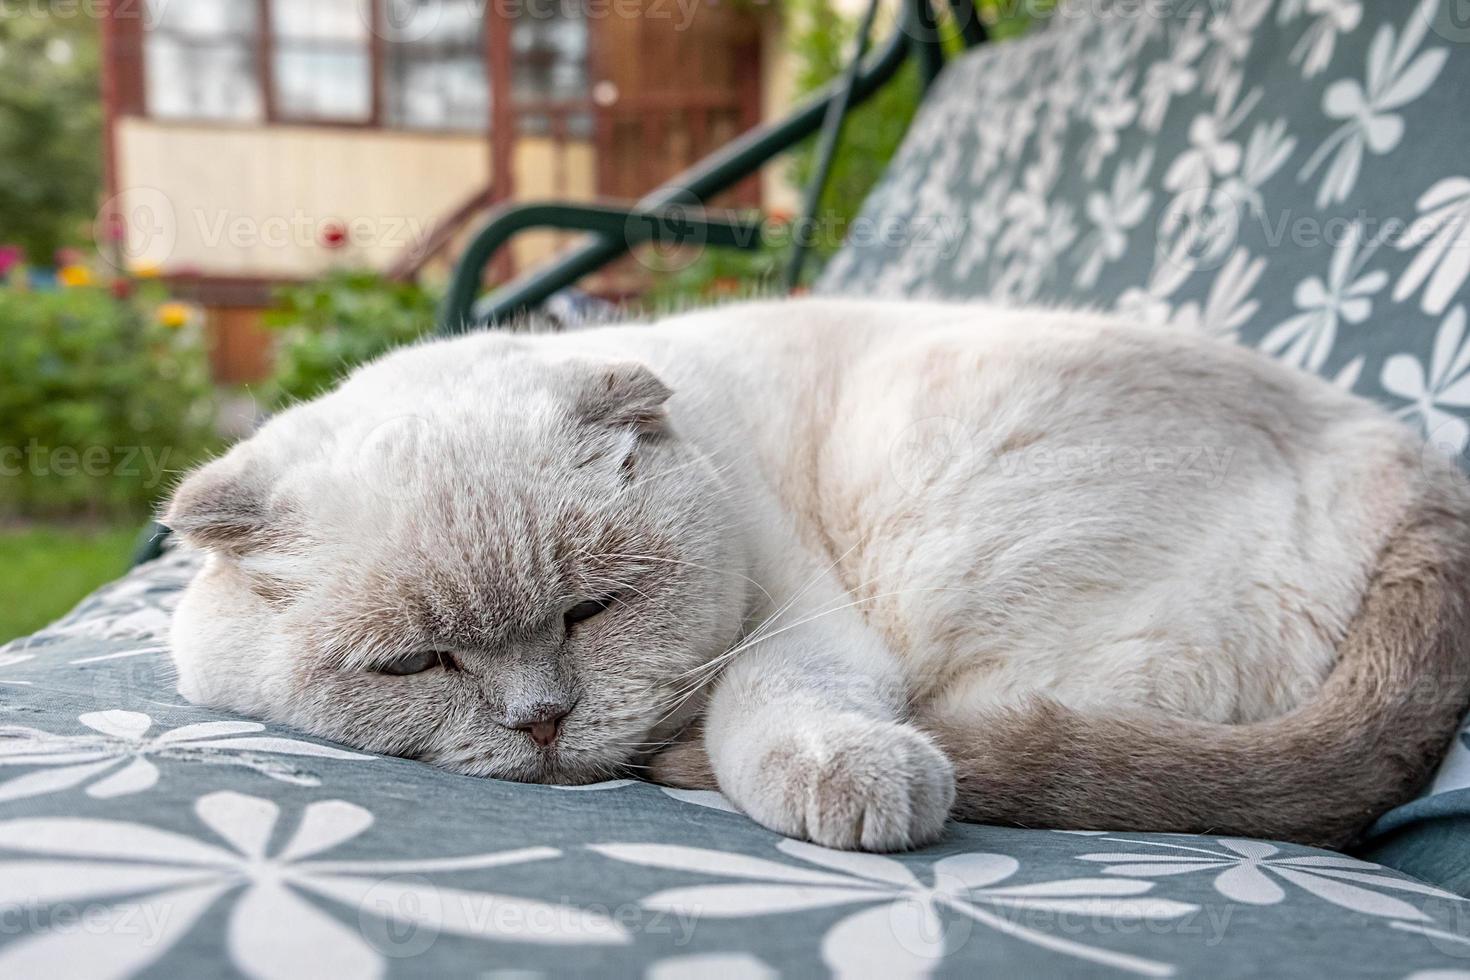 gracioso gato británico blanco doméstico de pelo corto durmiendo en un sofá columpio de jardín. gatito descansando y relájese al sol al aire libre en el patio trasero el día de verano. cuidado de mascotas y concepto de animales. foto